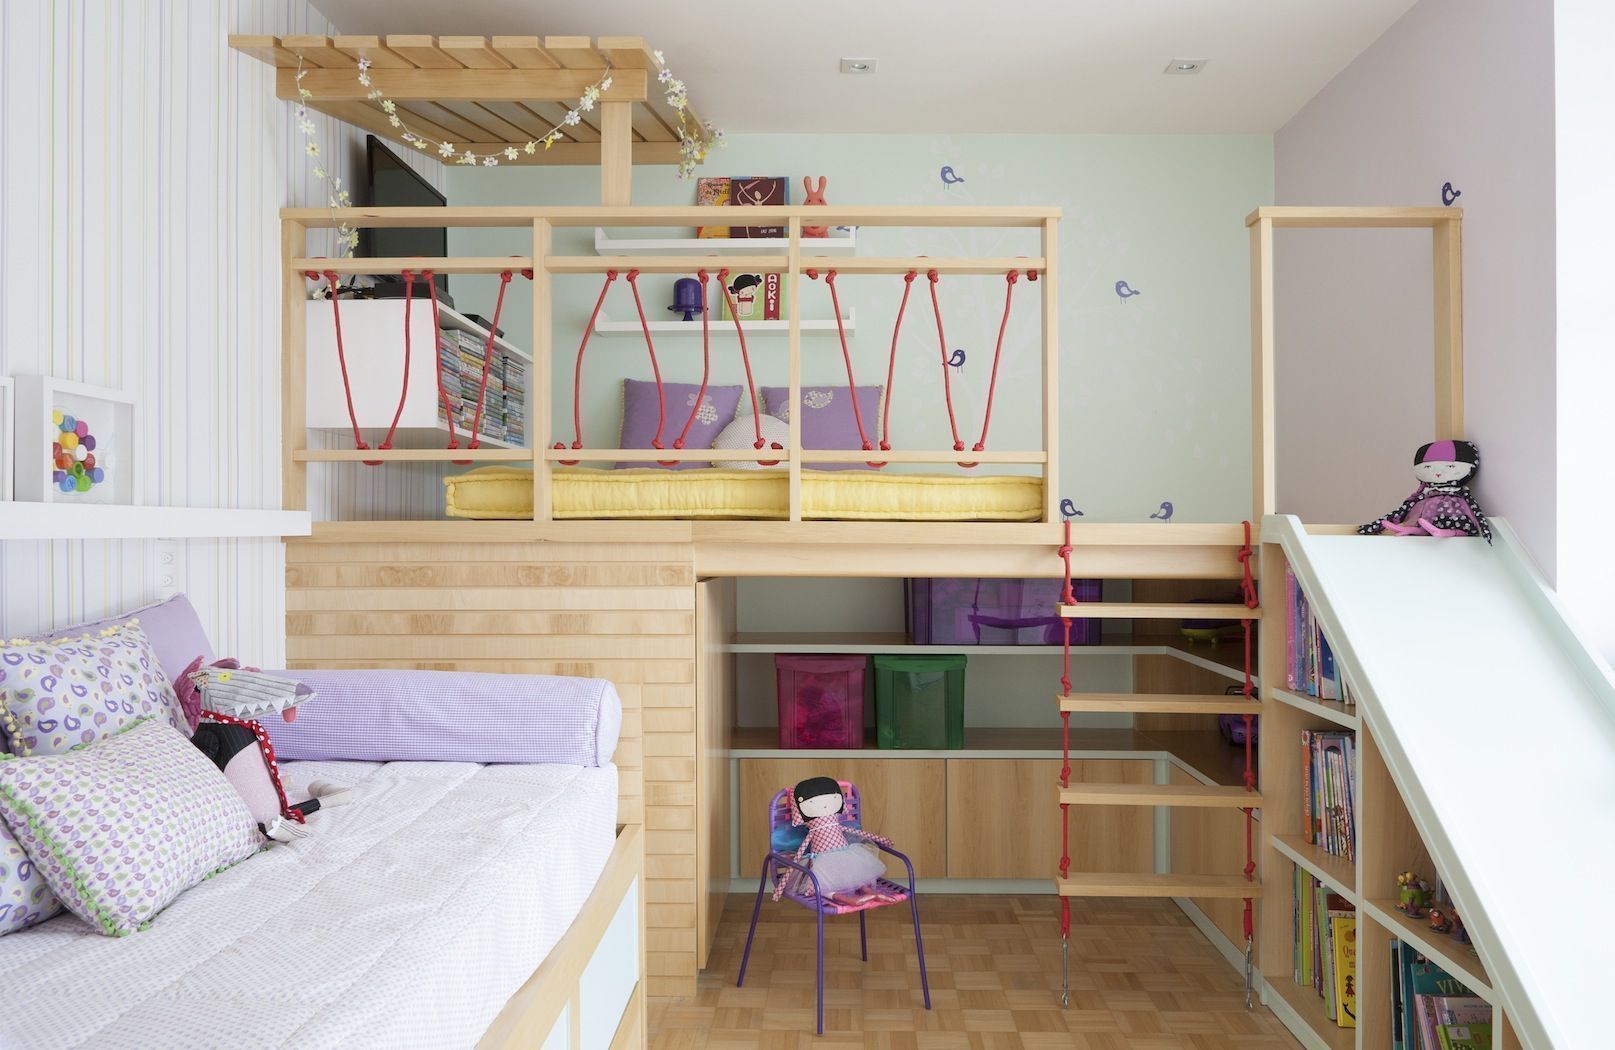  غرفة الأطفال: 65 فكرة لبيئات مزينة بالصور